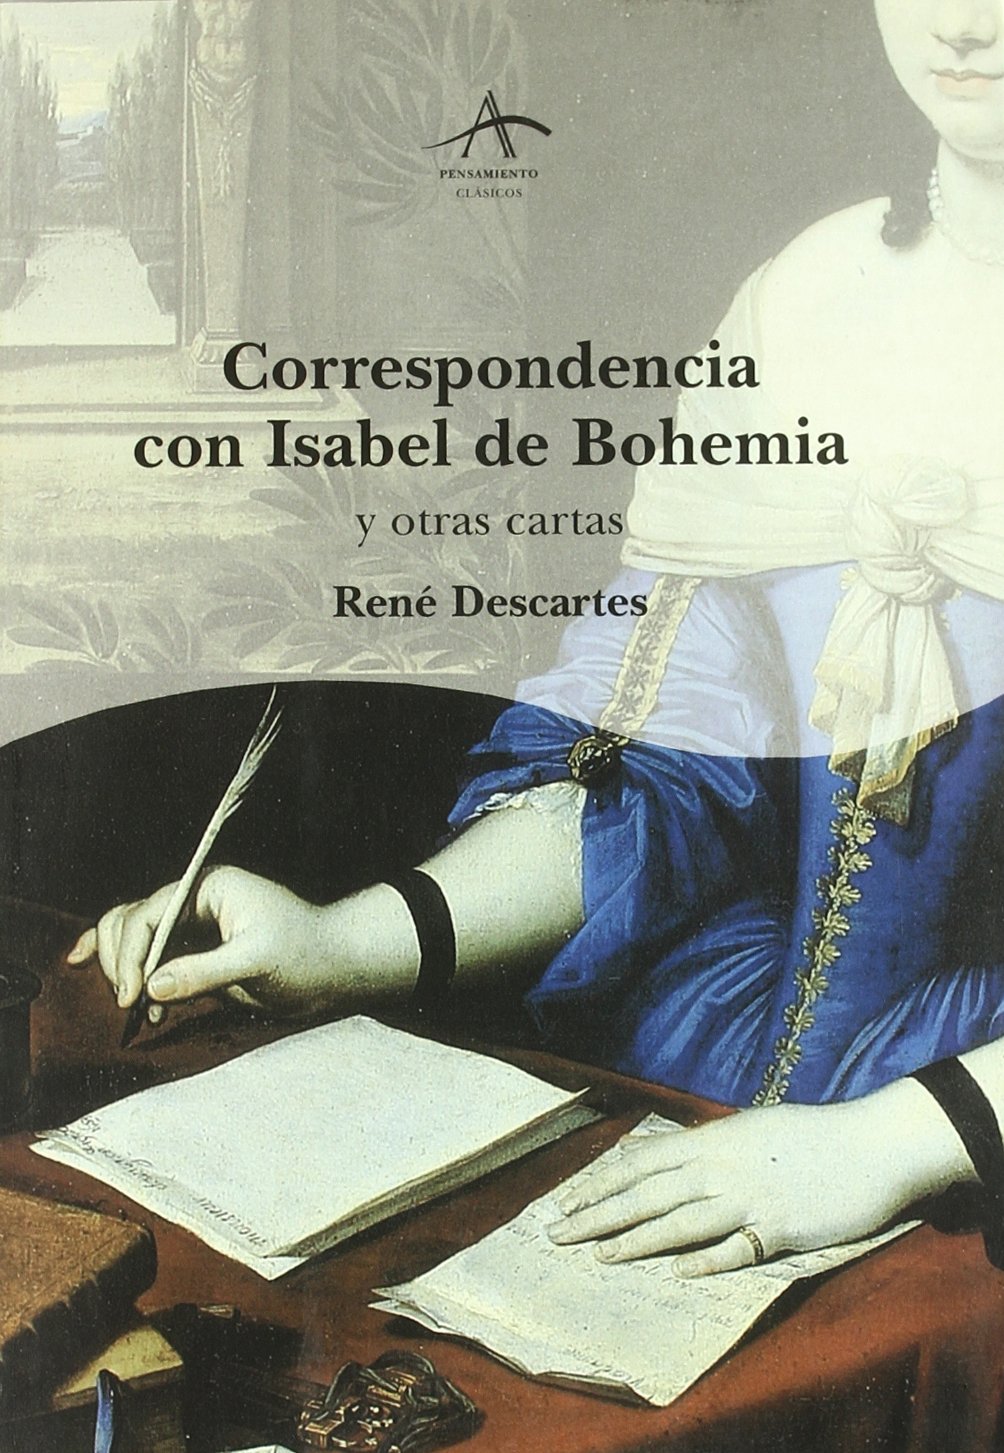 Imagen de portada del libro Correspondencia con Isabel de Bohemia y otras cartas